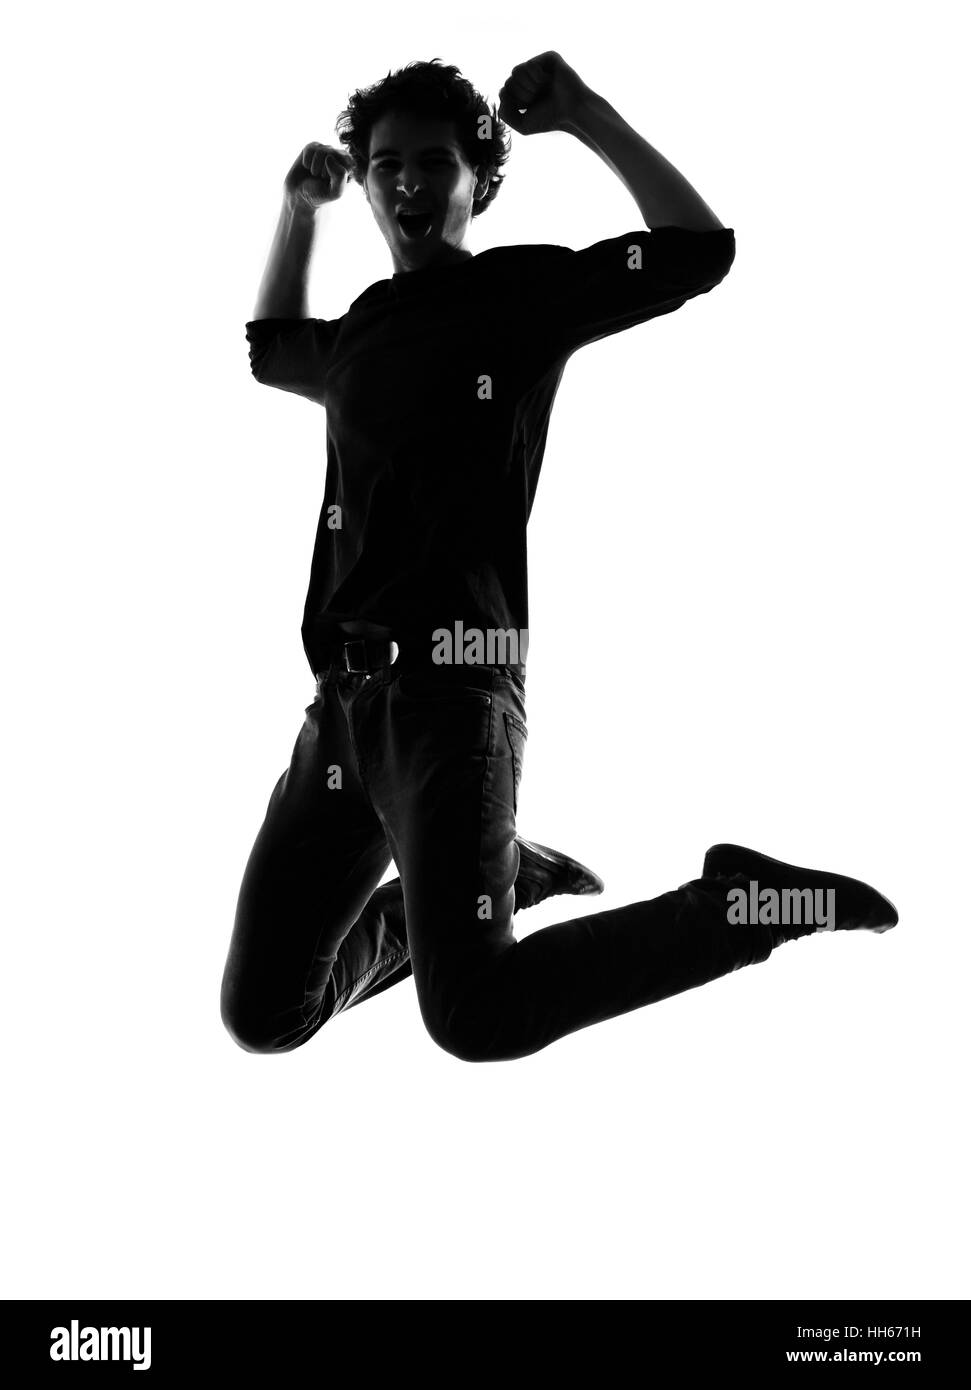 Giovane uomo jumping happy silhouette in studio isolato su sfondo bianco Foto Stock